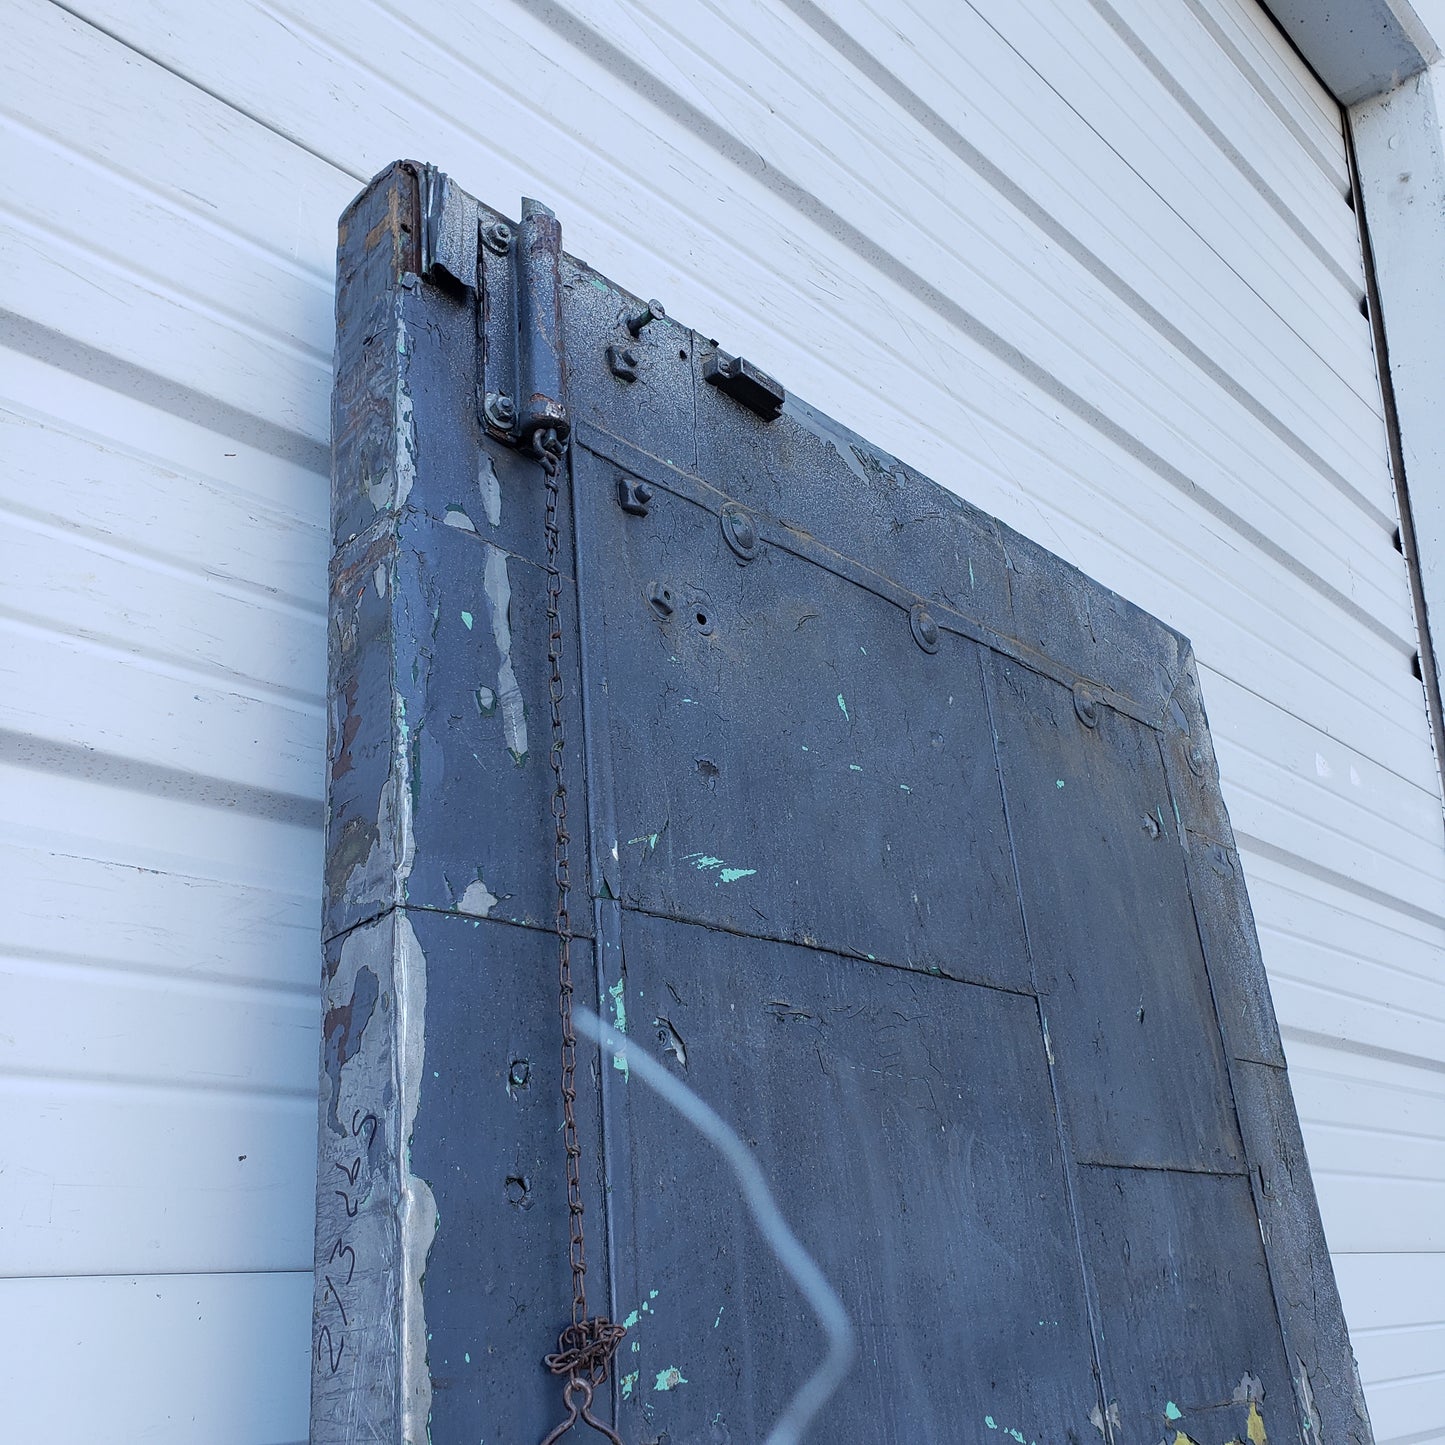 Single Industrial Metal Fire Door